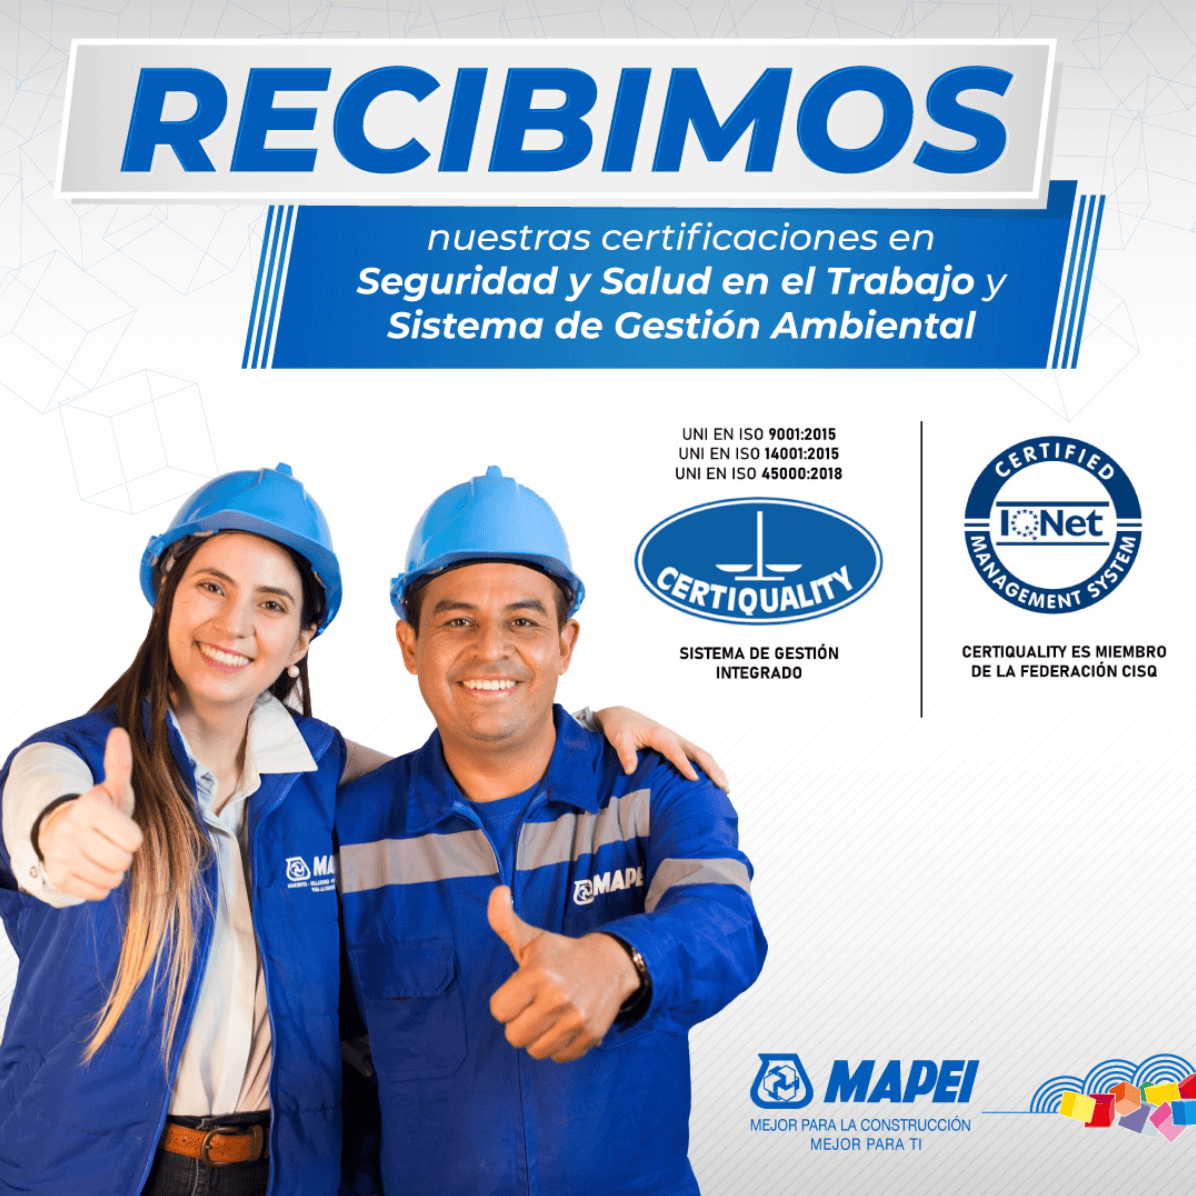 Mapei Colombia recibe las Certificaciones en Seguridad y Salud en el trabajo y en el Sistema de Gestión Ambiental